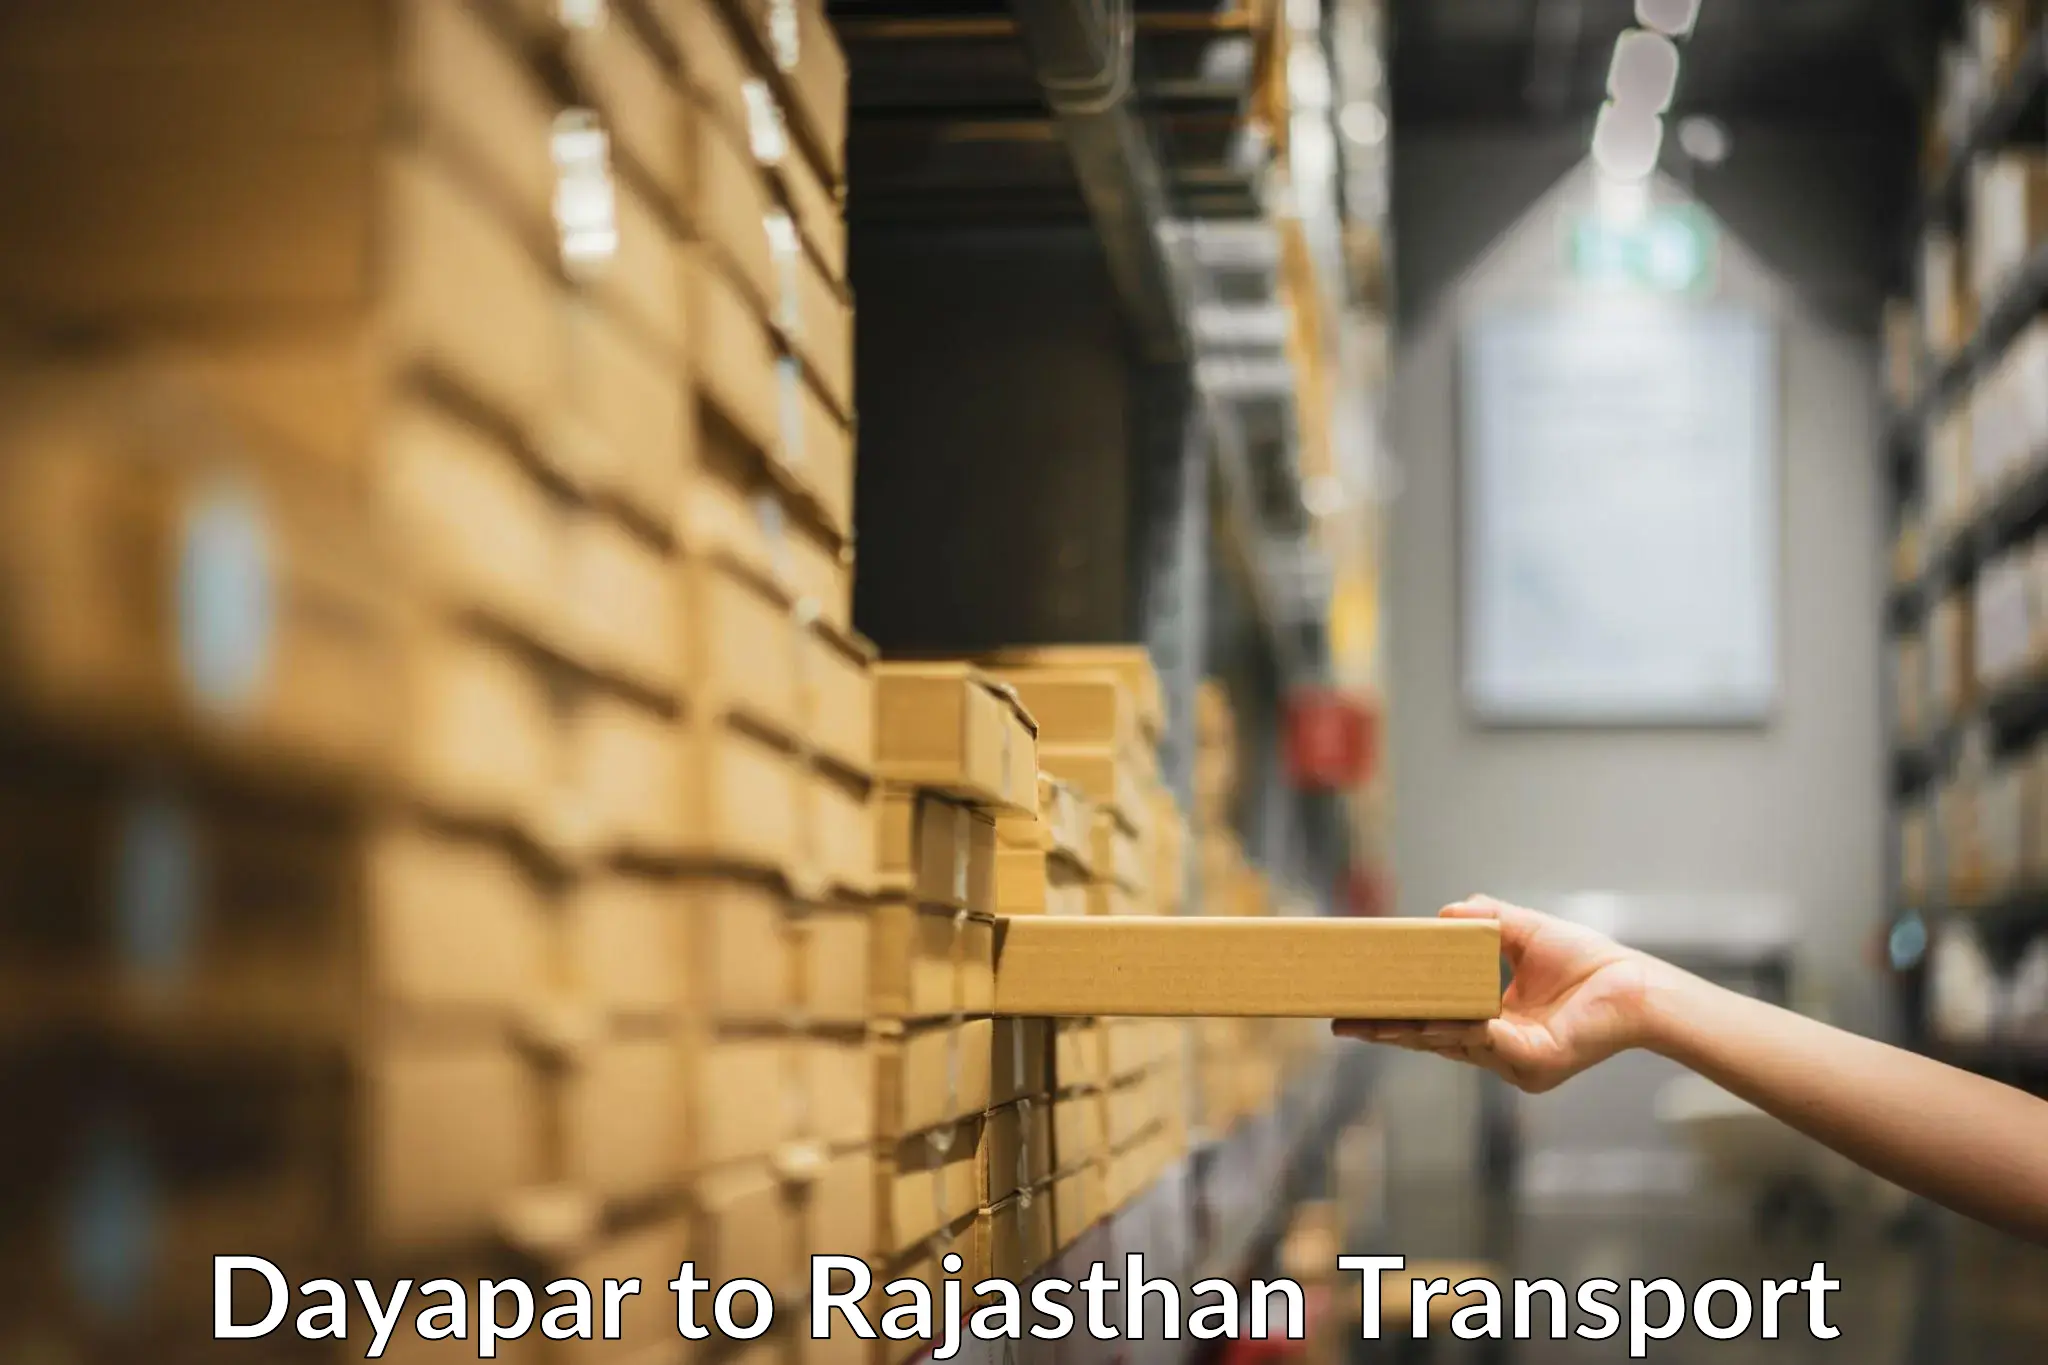 Transport shared services Dayapar to Jaipur